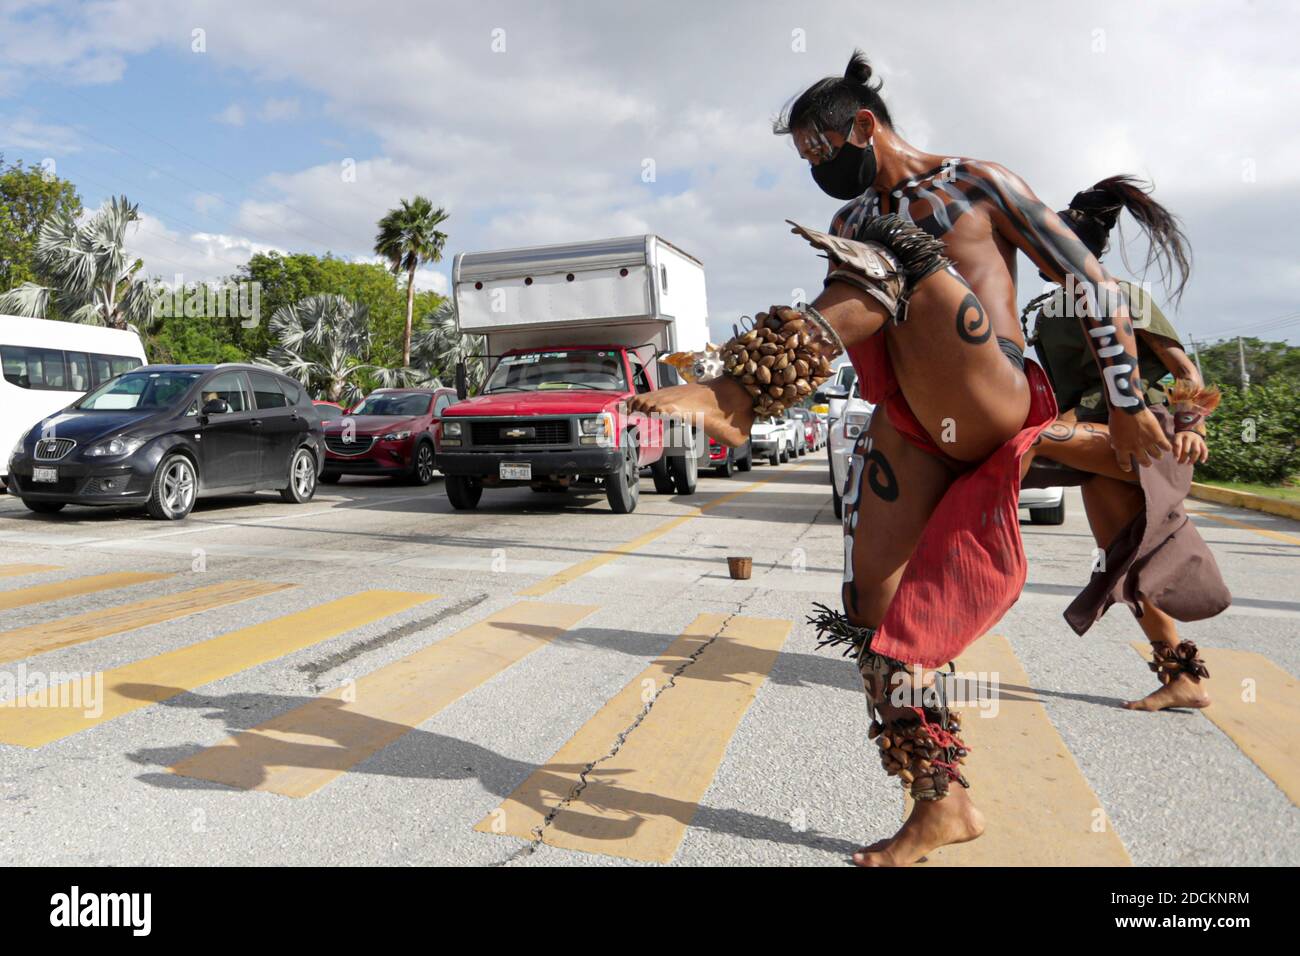 PLAYA DEL CARMEN, MEXIKO - NOVEMBER 21: Eine Pre-hispanic Tänzerin führt einen rituellen Tanz als Versuch, Geld von den Fahrern zu erhalten. Die vorhispanisch gekleideten Tänzer gehen von 8 bis 11 Uhr auf die Straße, um als neue Art zu arbeiten; Aufgrund der Pandemie wurden Personen, die im Circo Soleil in Playa del Carmen arbeiteten, arbeitslos gelassen und haben während der New Covid-19-Krise am 21. November 2020 in Playa del Carmen, Mexiko, nach einem Weg gesucht, um Einkommen zu erzielen. Kredit: Rodolfo Flores/Eyepix Gruppe/Der Fotozugang Gutschrift: Der Fotozugang/Alamy Live Nachrichten Stockfoto